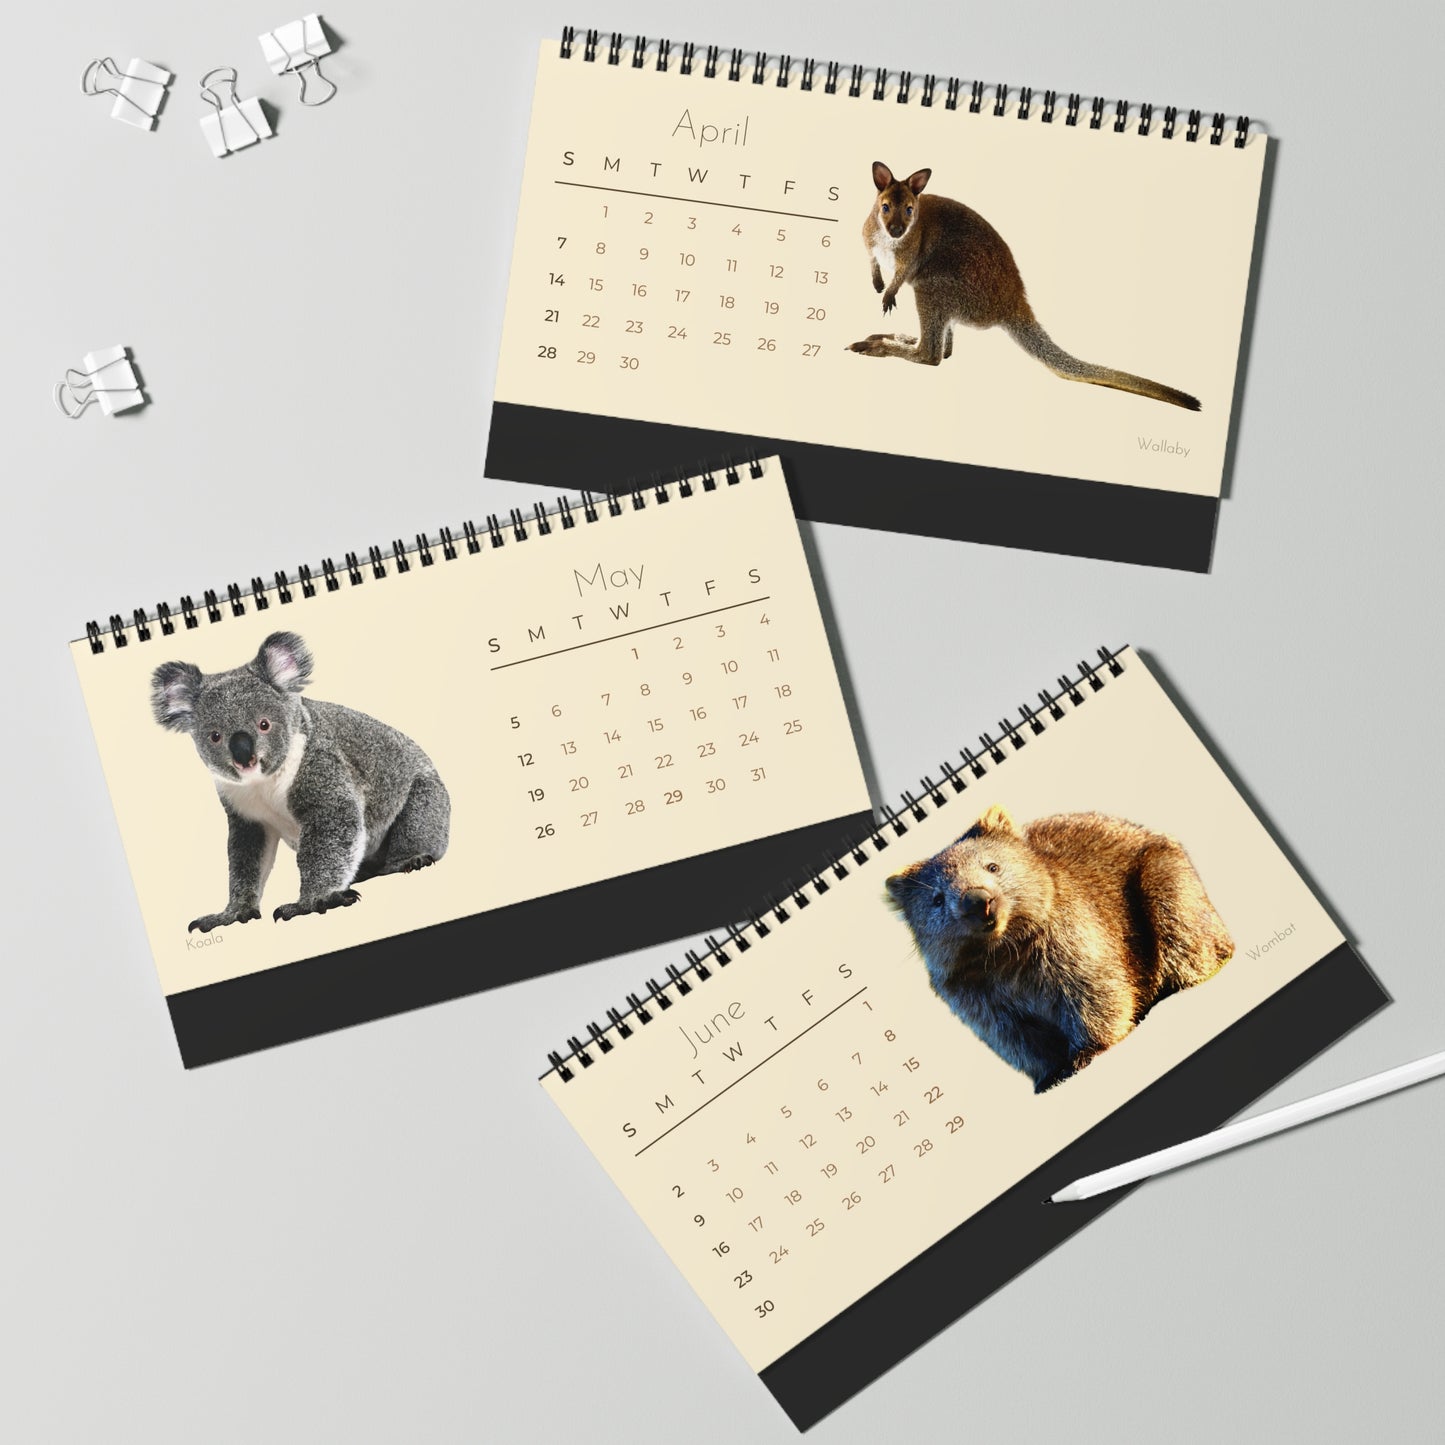 Magical Marsupials of 2024 Desk Calendar